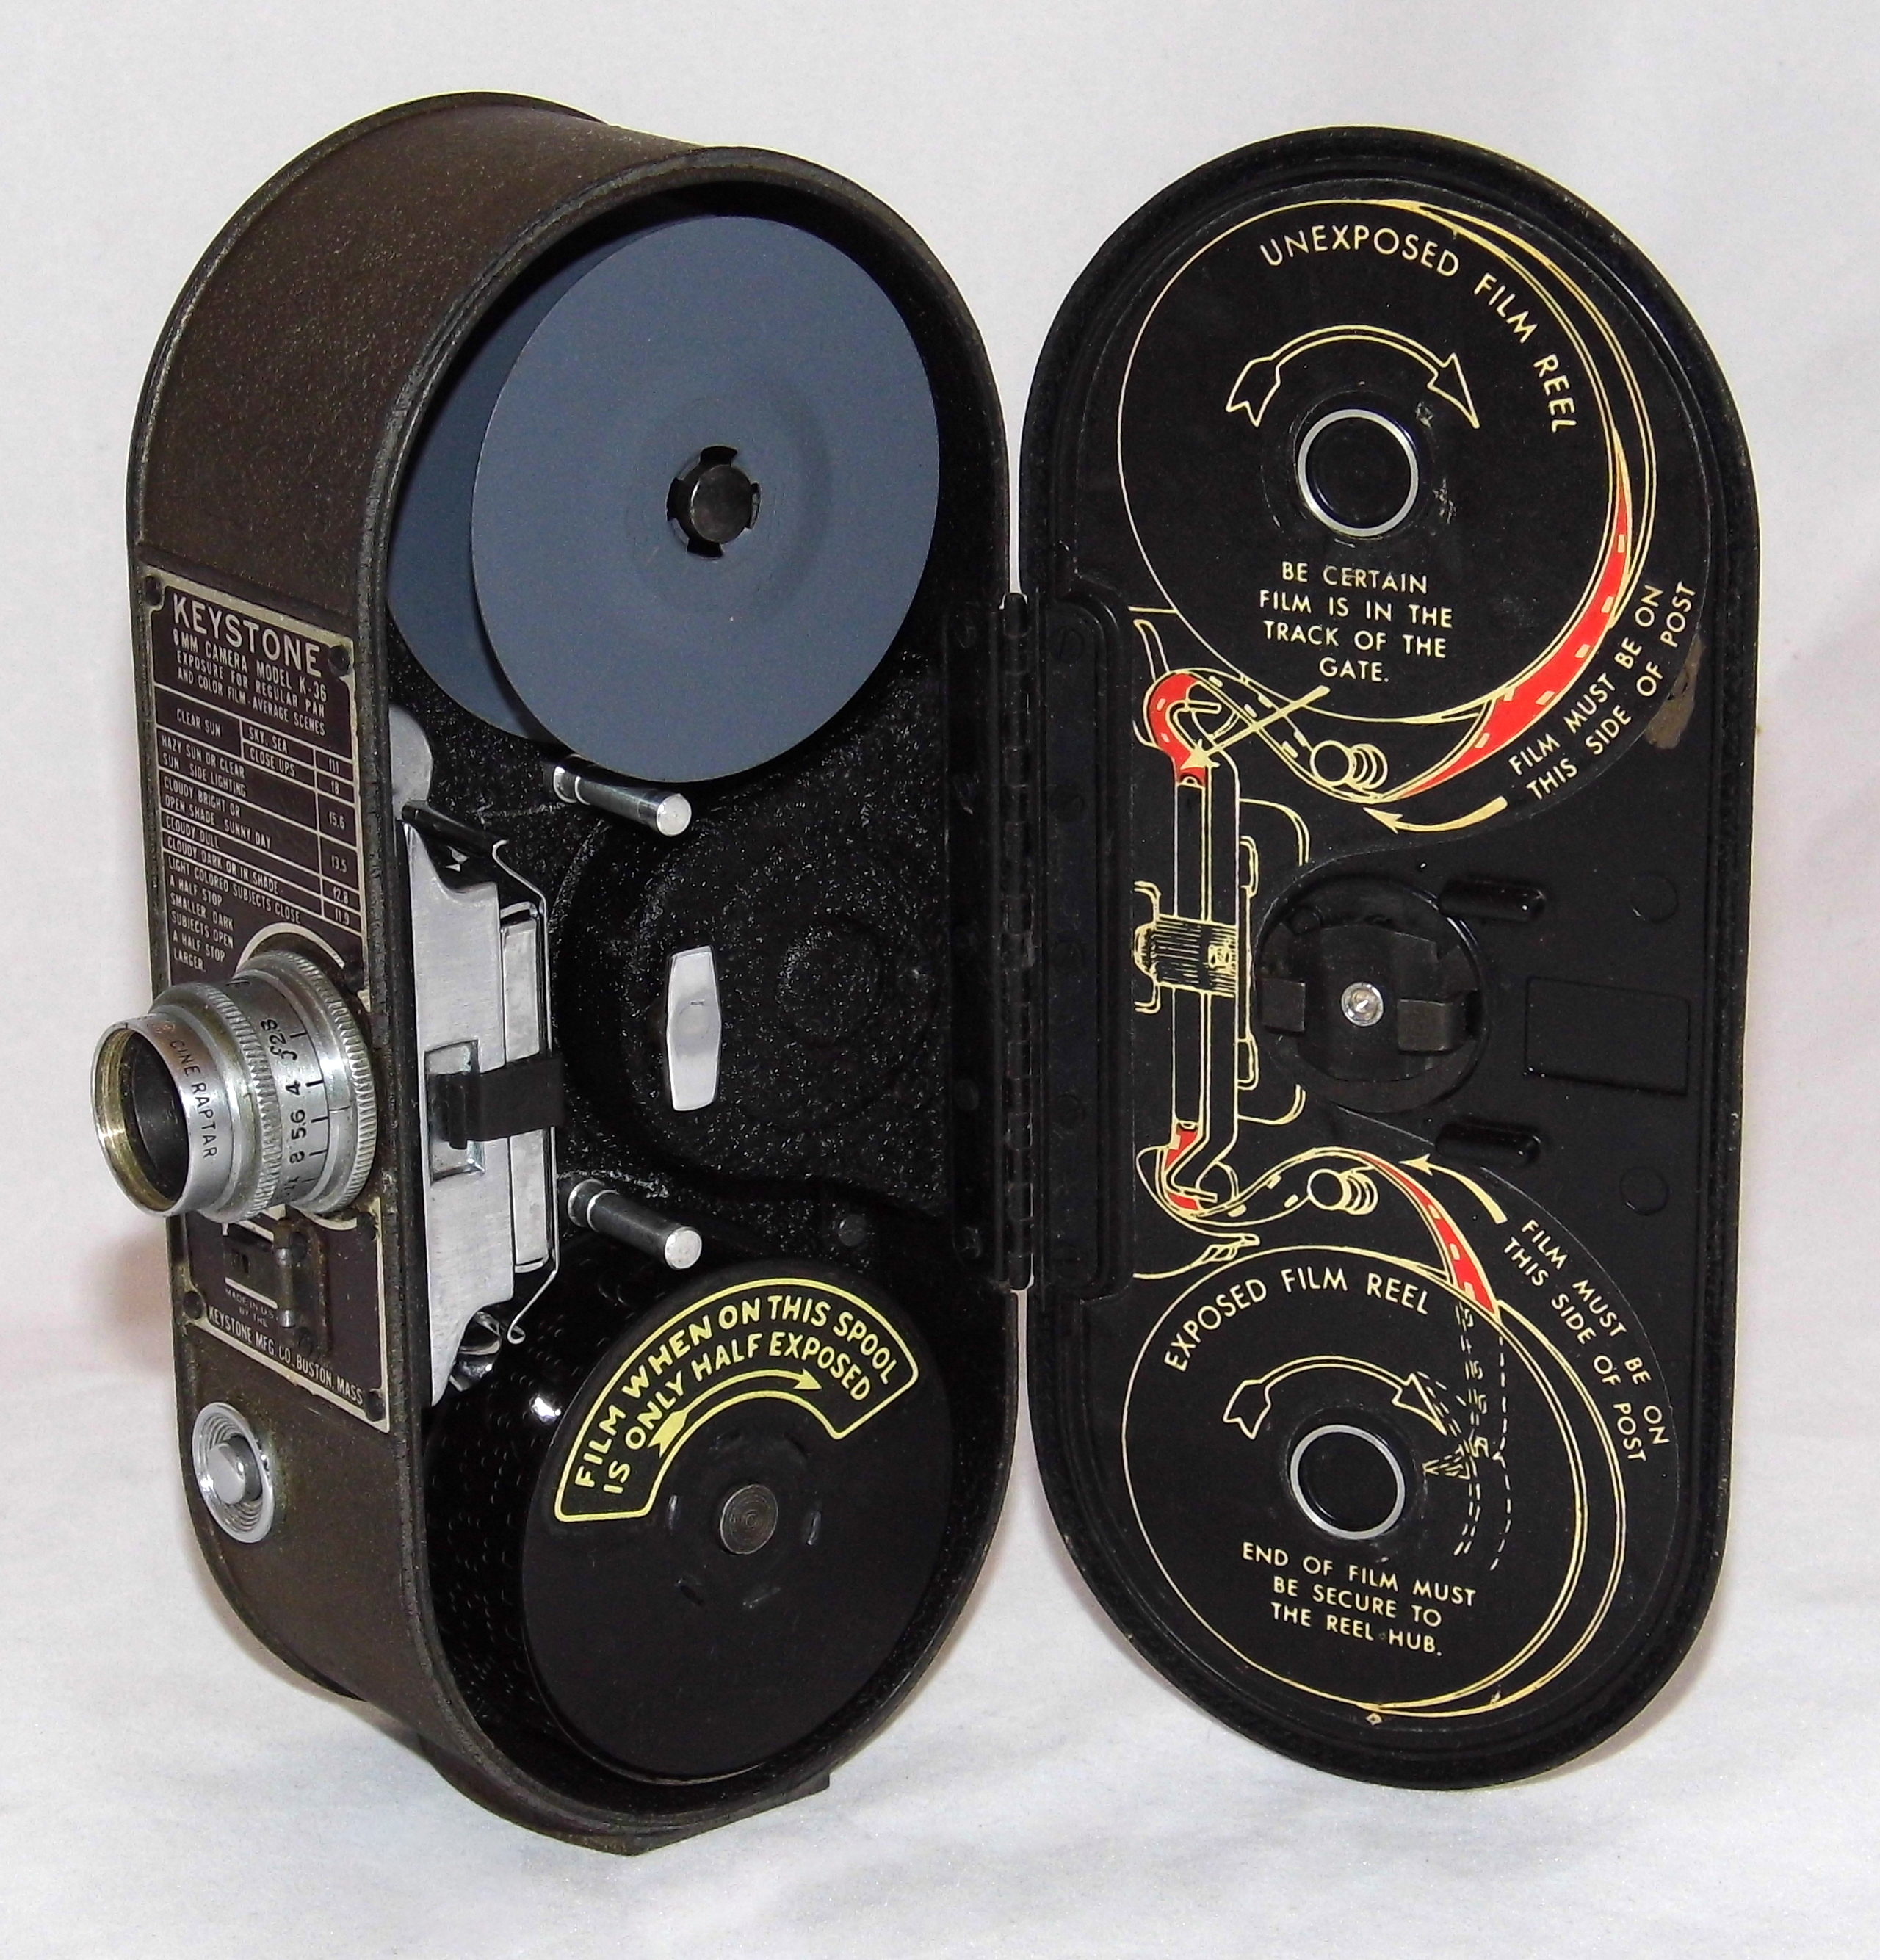 高性能 米キーストーンk36 8ミリフィルム映画用カメラ机械 